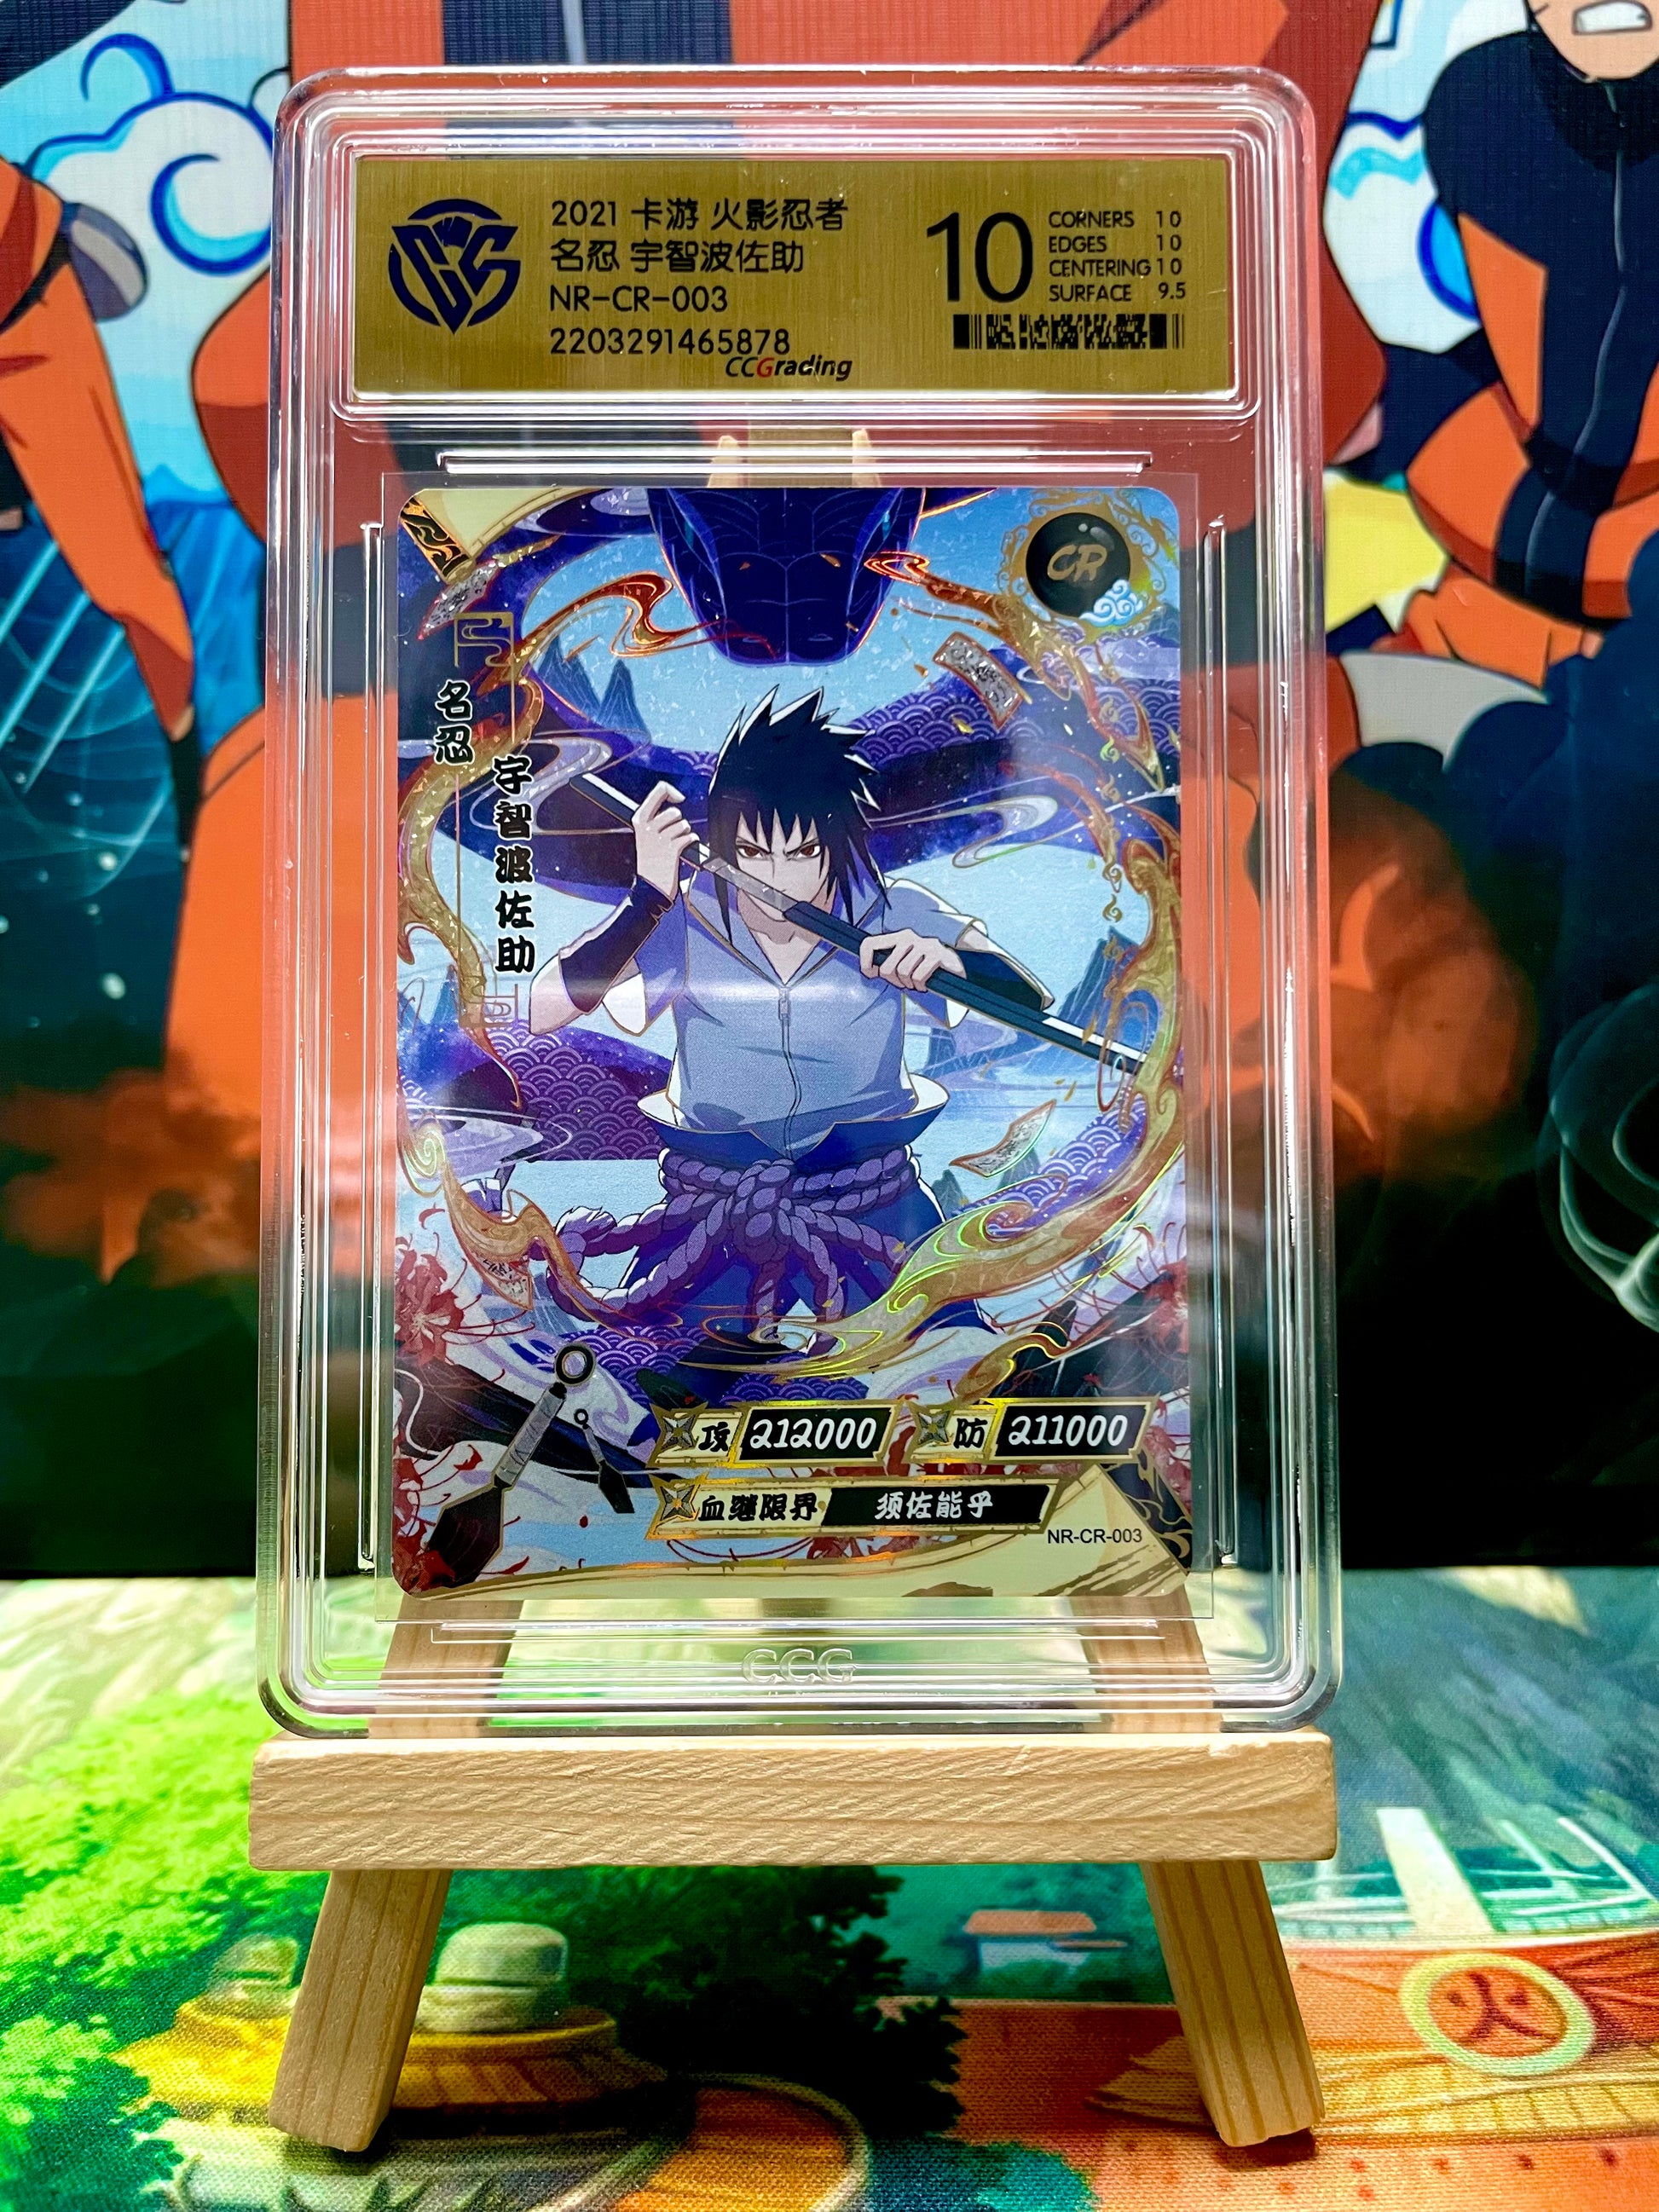 KAYOU Naruto NR Card 9.5 Graded Card Rating Card Naruto Sasuke Uchiha Obito  Gaara Collection Card